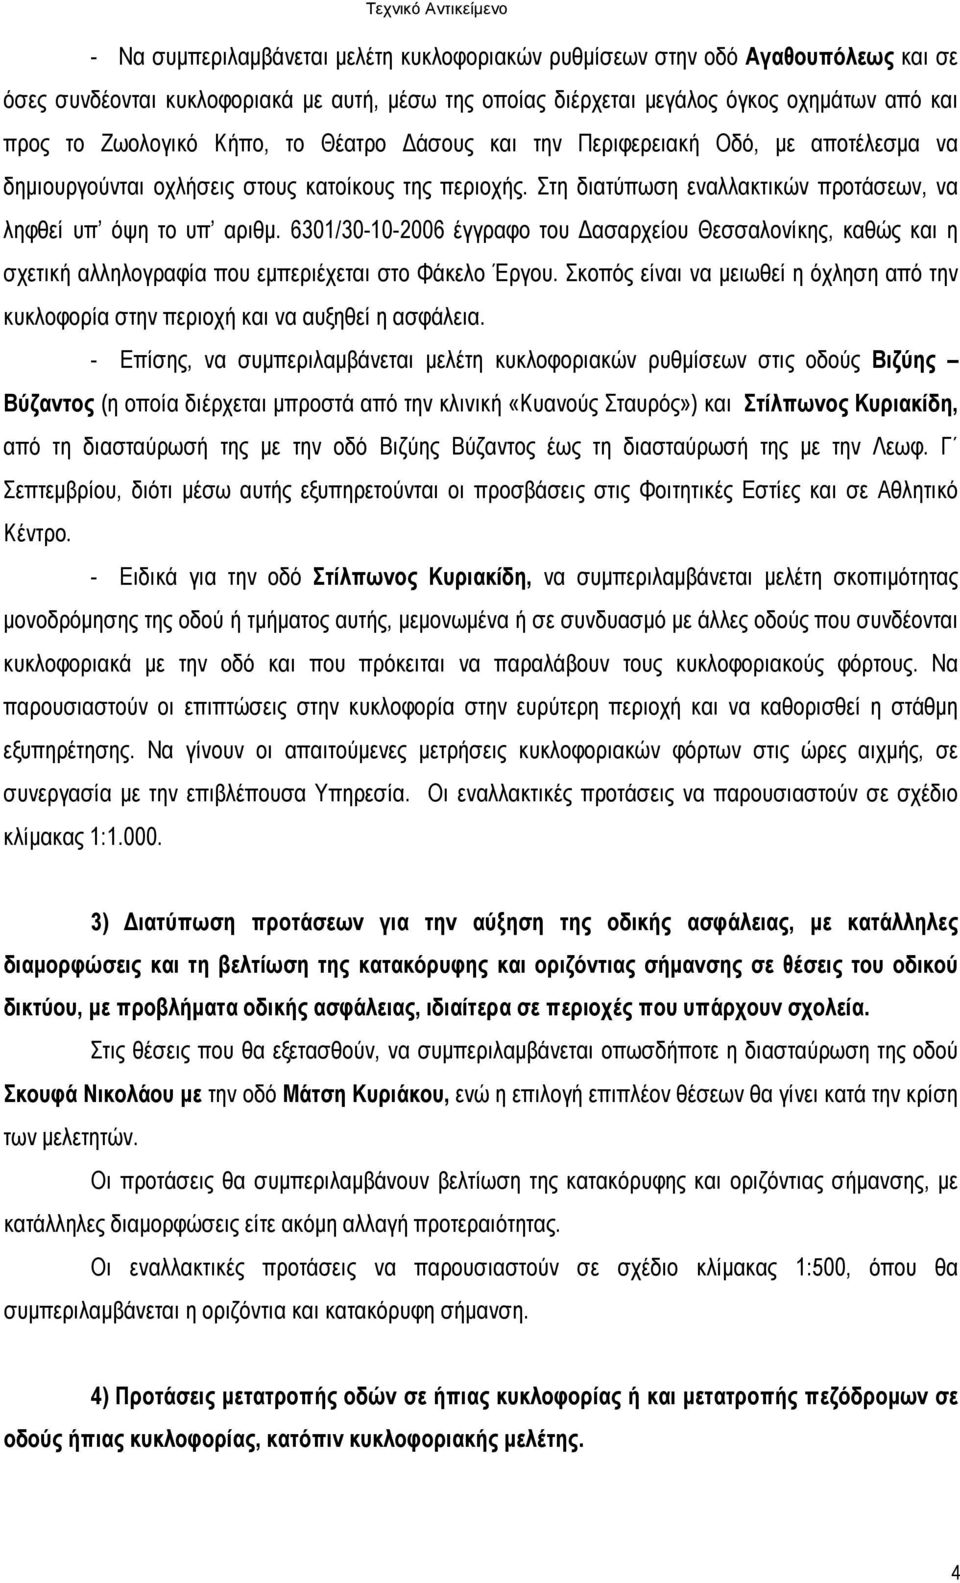 6301/30-10-2006 έγγραφο του ασαρχείου Θεσσαλονίκης, καθώς και η σχετική αλληλογραφία που εµπεριέχεται στο Φάκελο Έργου.